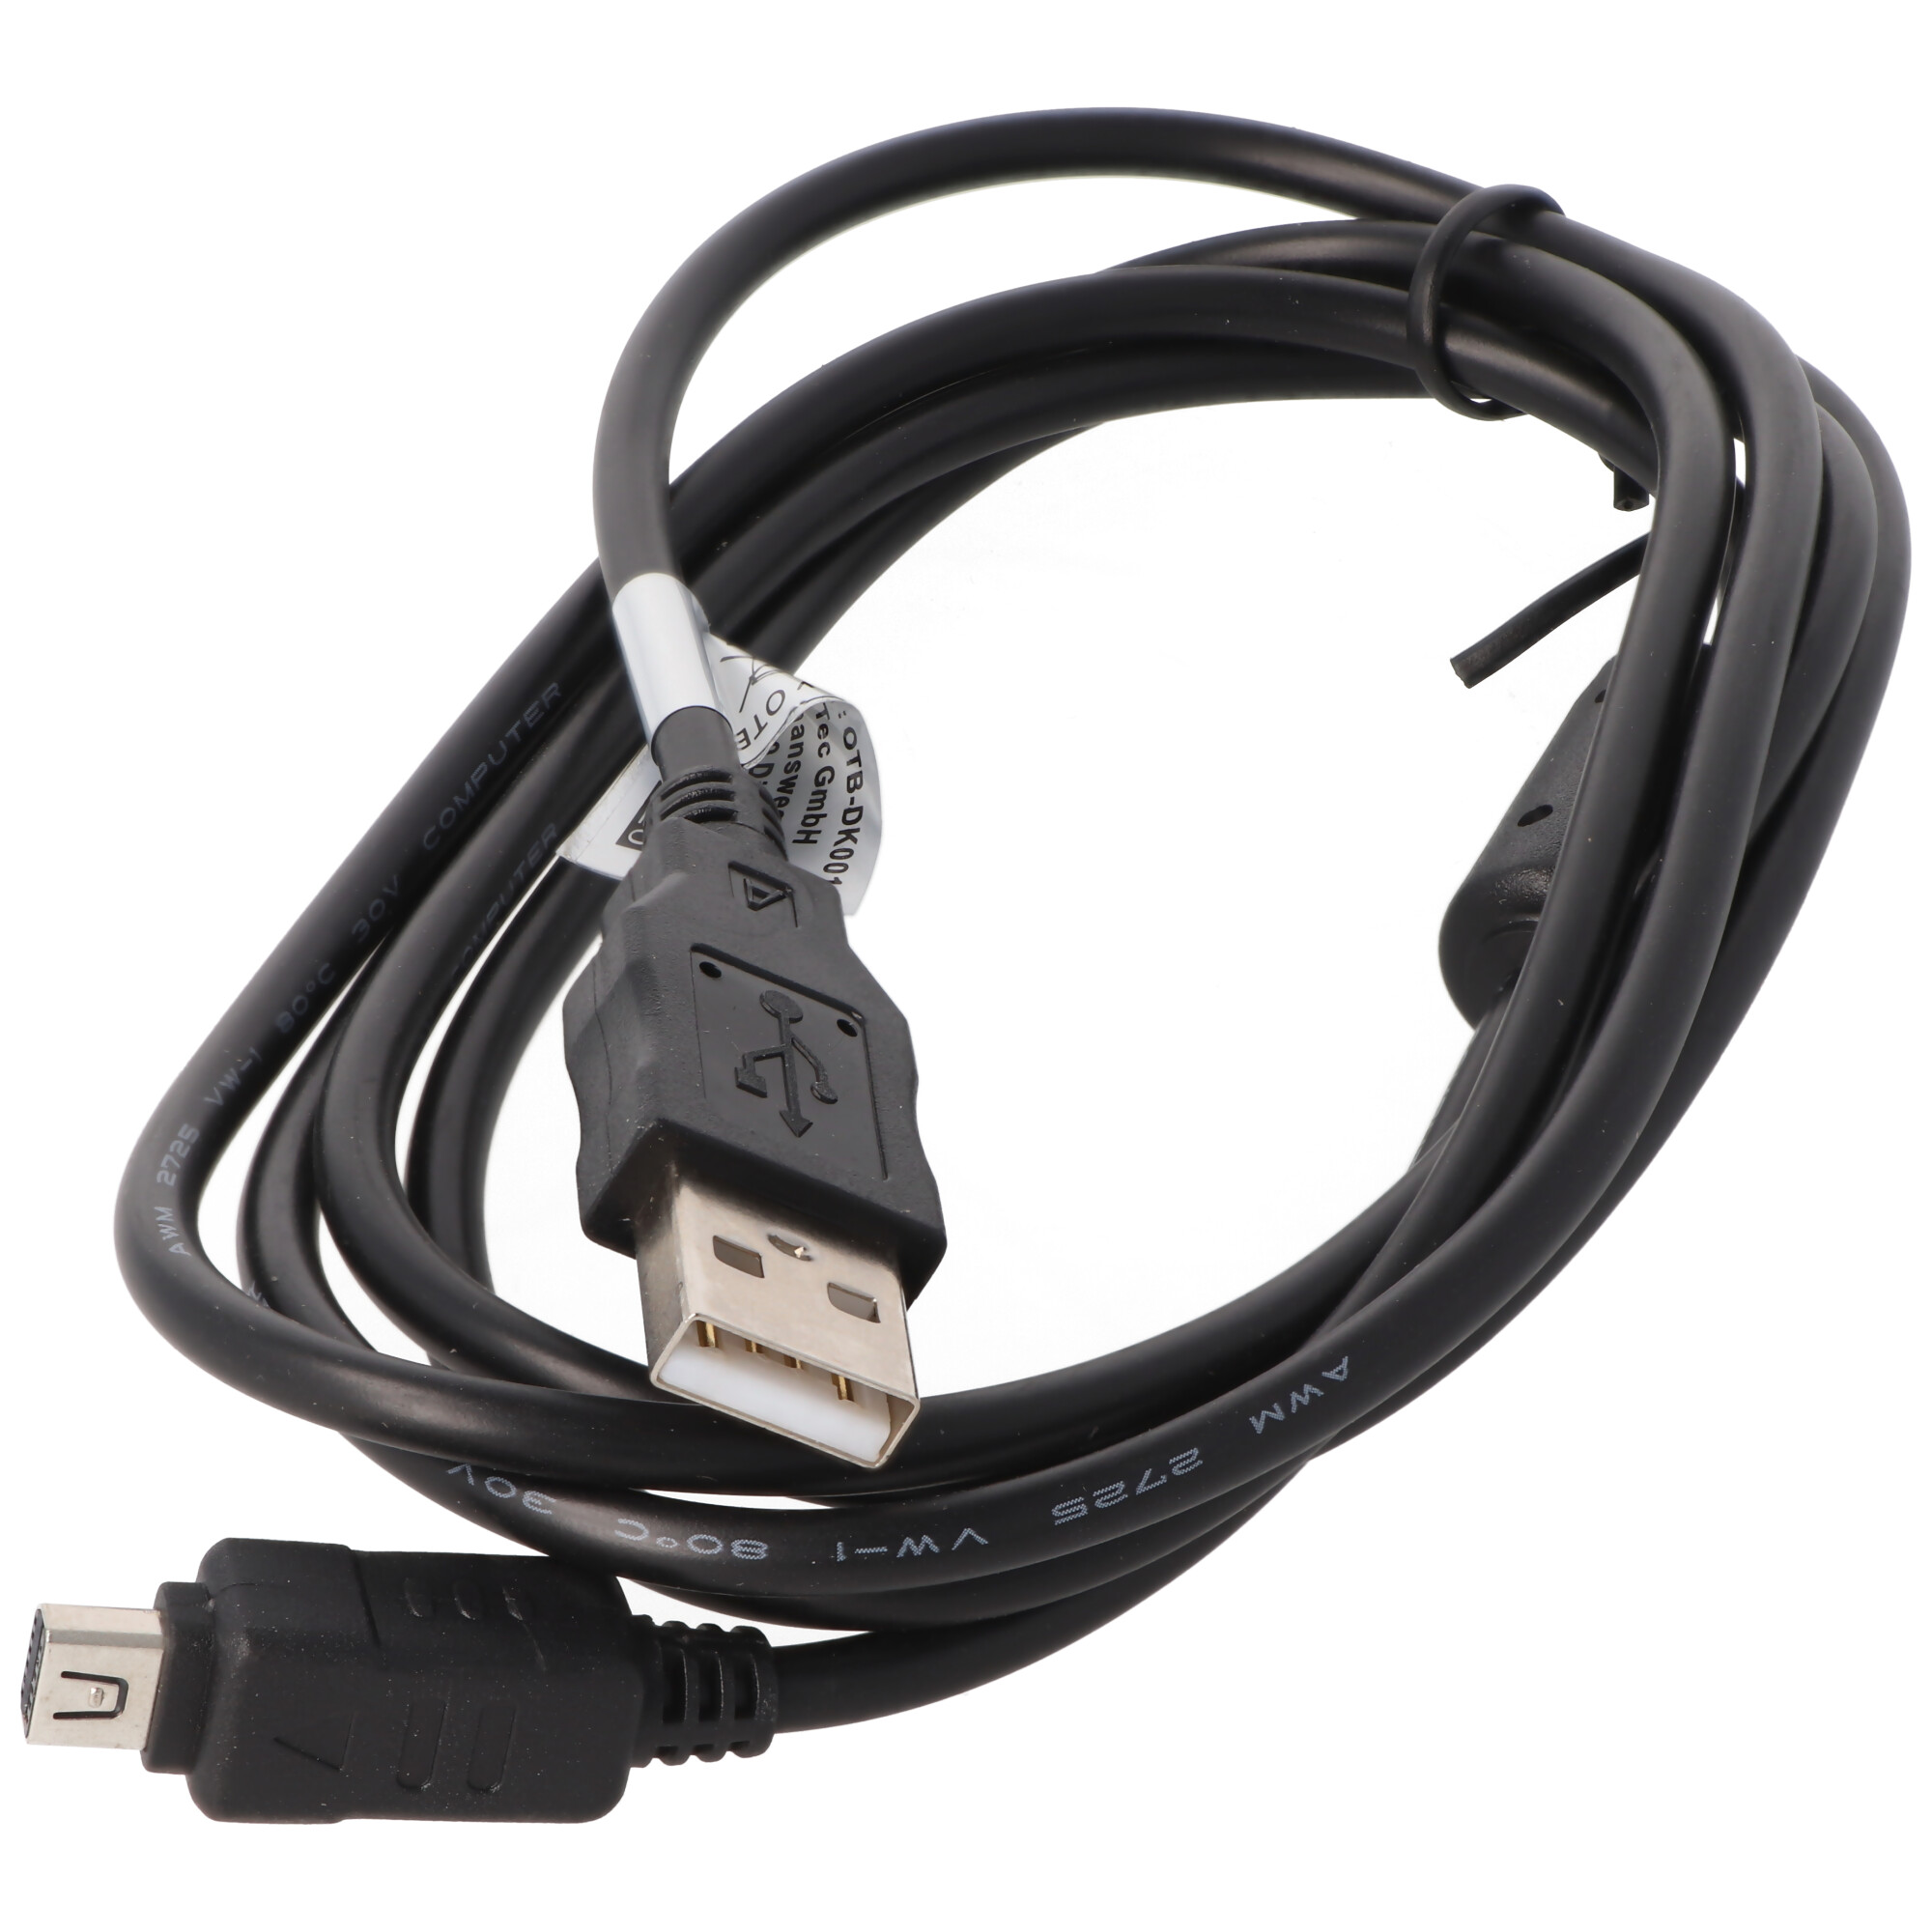 USB Datenkabel Verbindungskabel für Olympus Pen E-PL3 